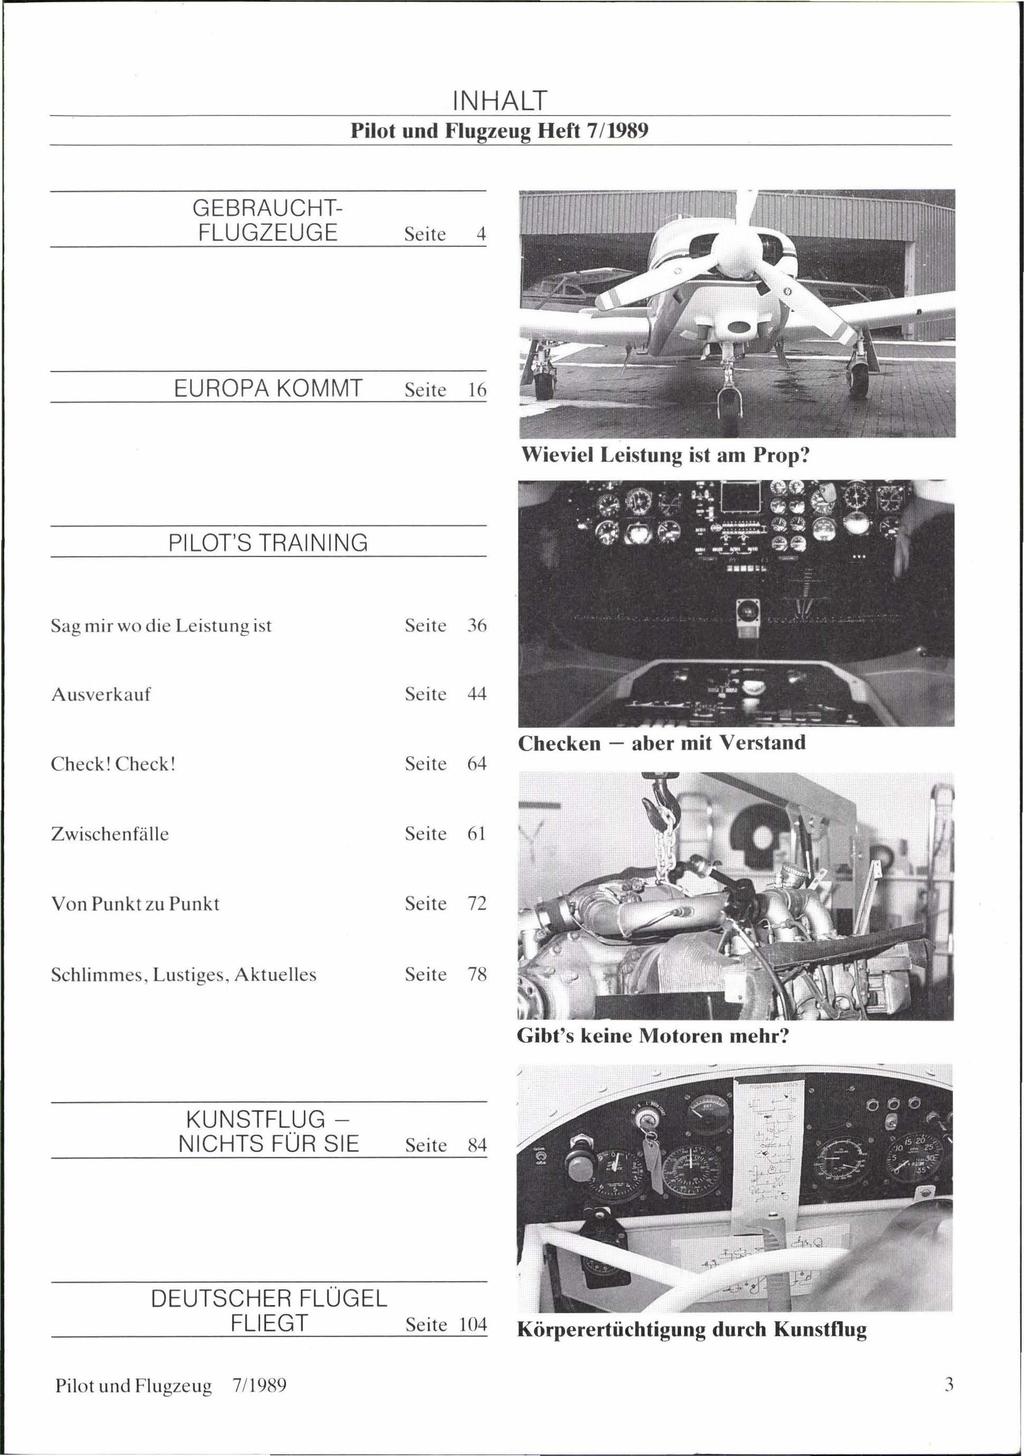 Pilot und Flugzeug Heft 7/1989 GEBRAUCHT- EUROPA KOMMT Seite 16 Wieviel Leistung ist am Prop? Sag mir wo die Leistung ist Seite 36 Ausverkauf 4 Check!